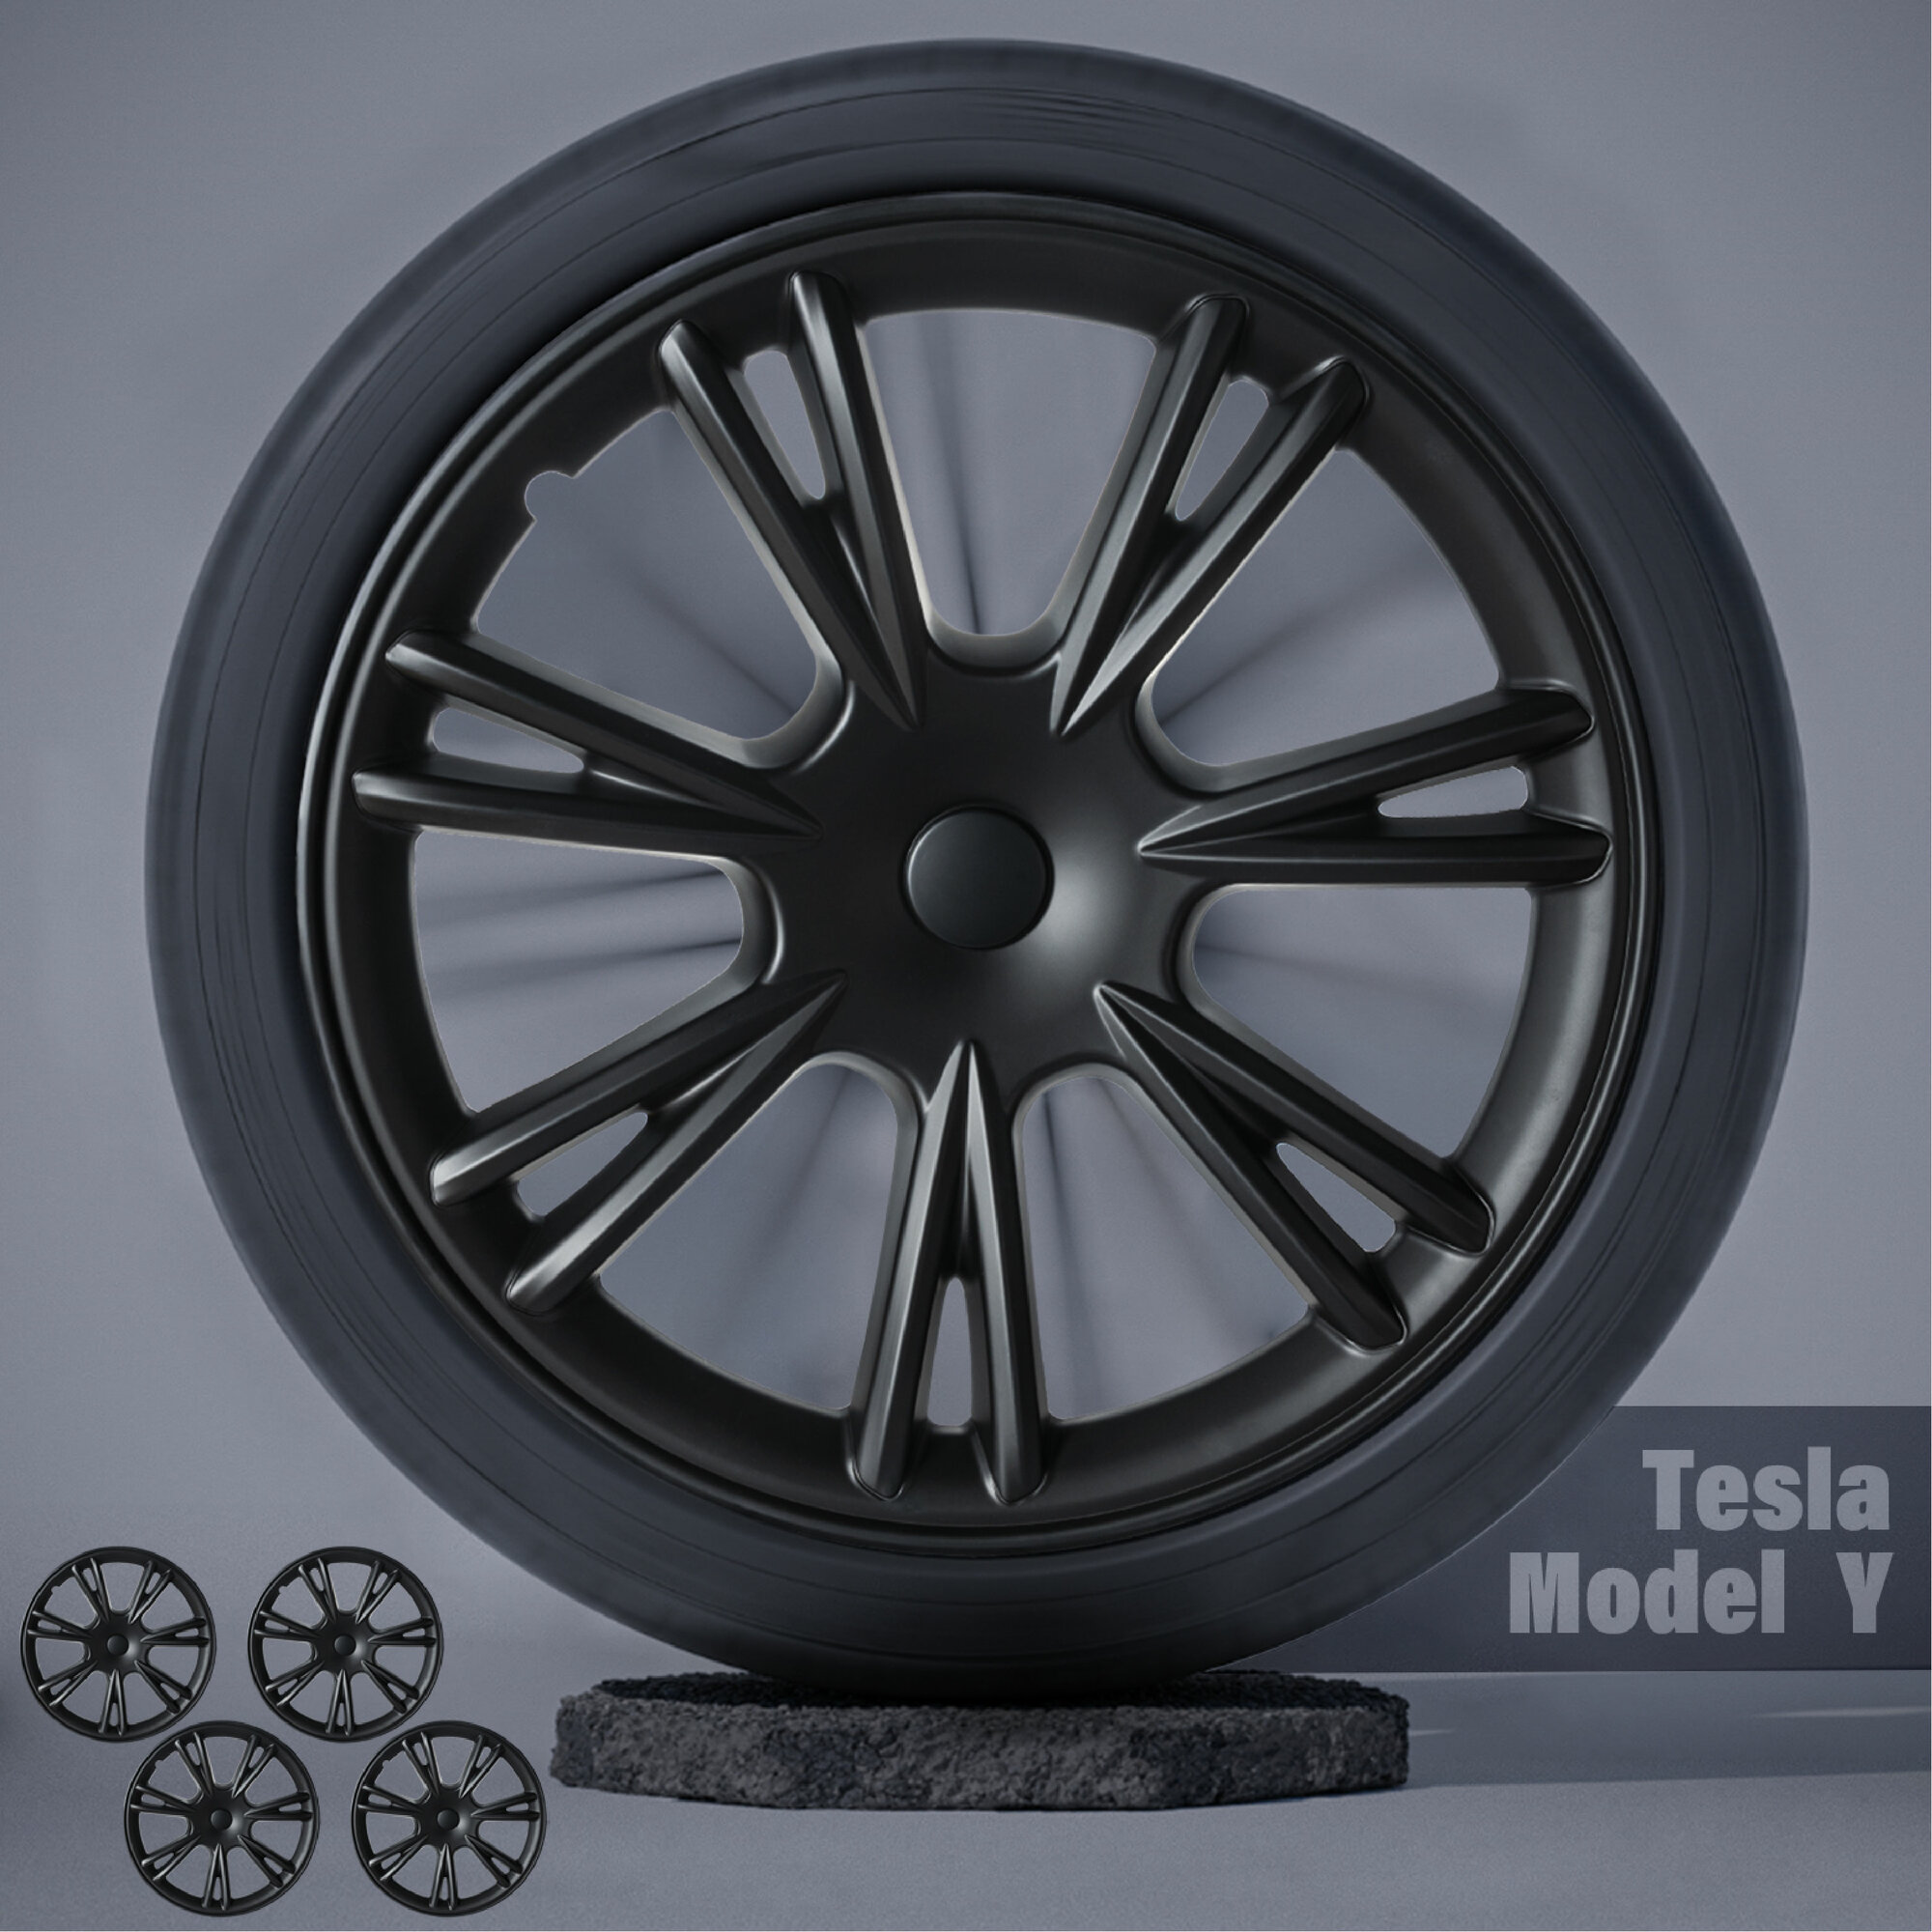 Tesla Model Y 19“ hubcaps black.jpg